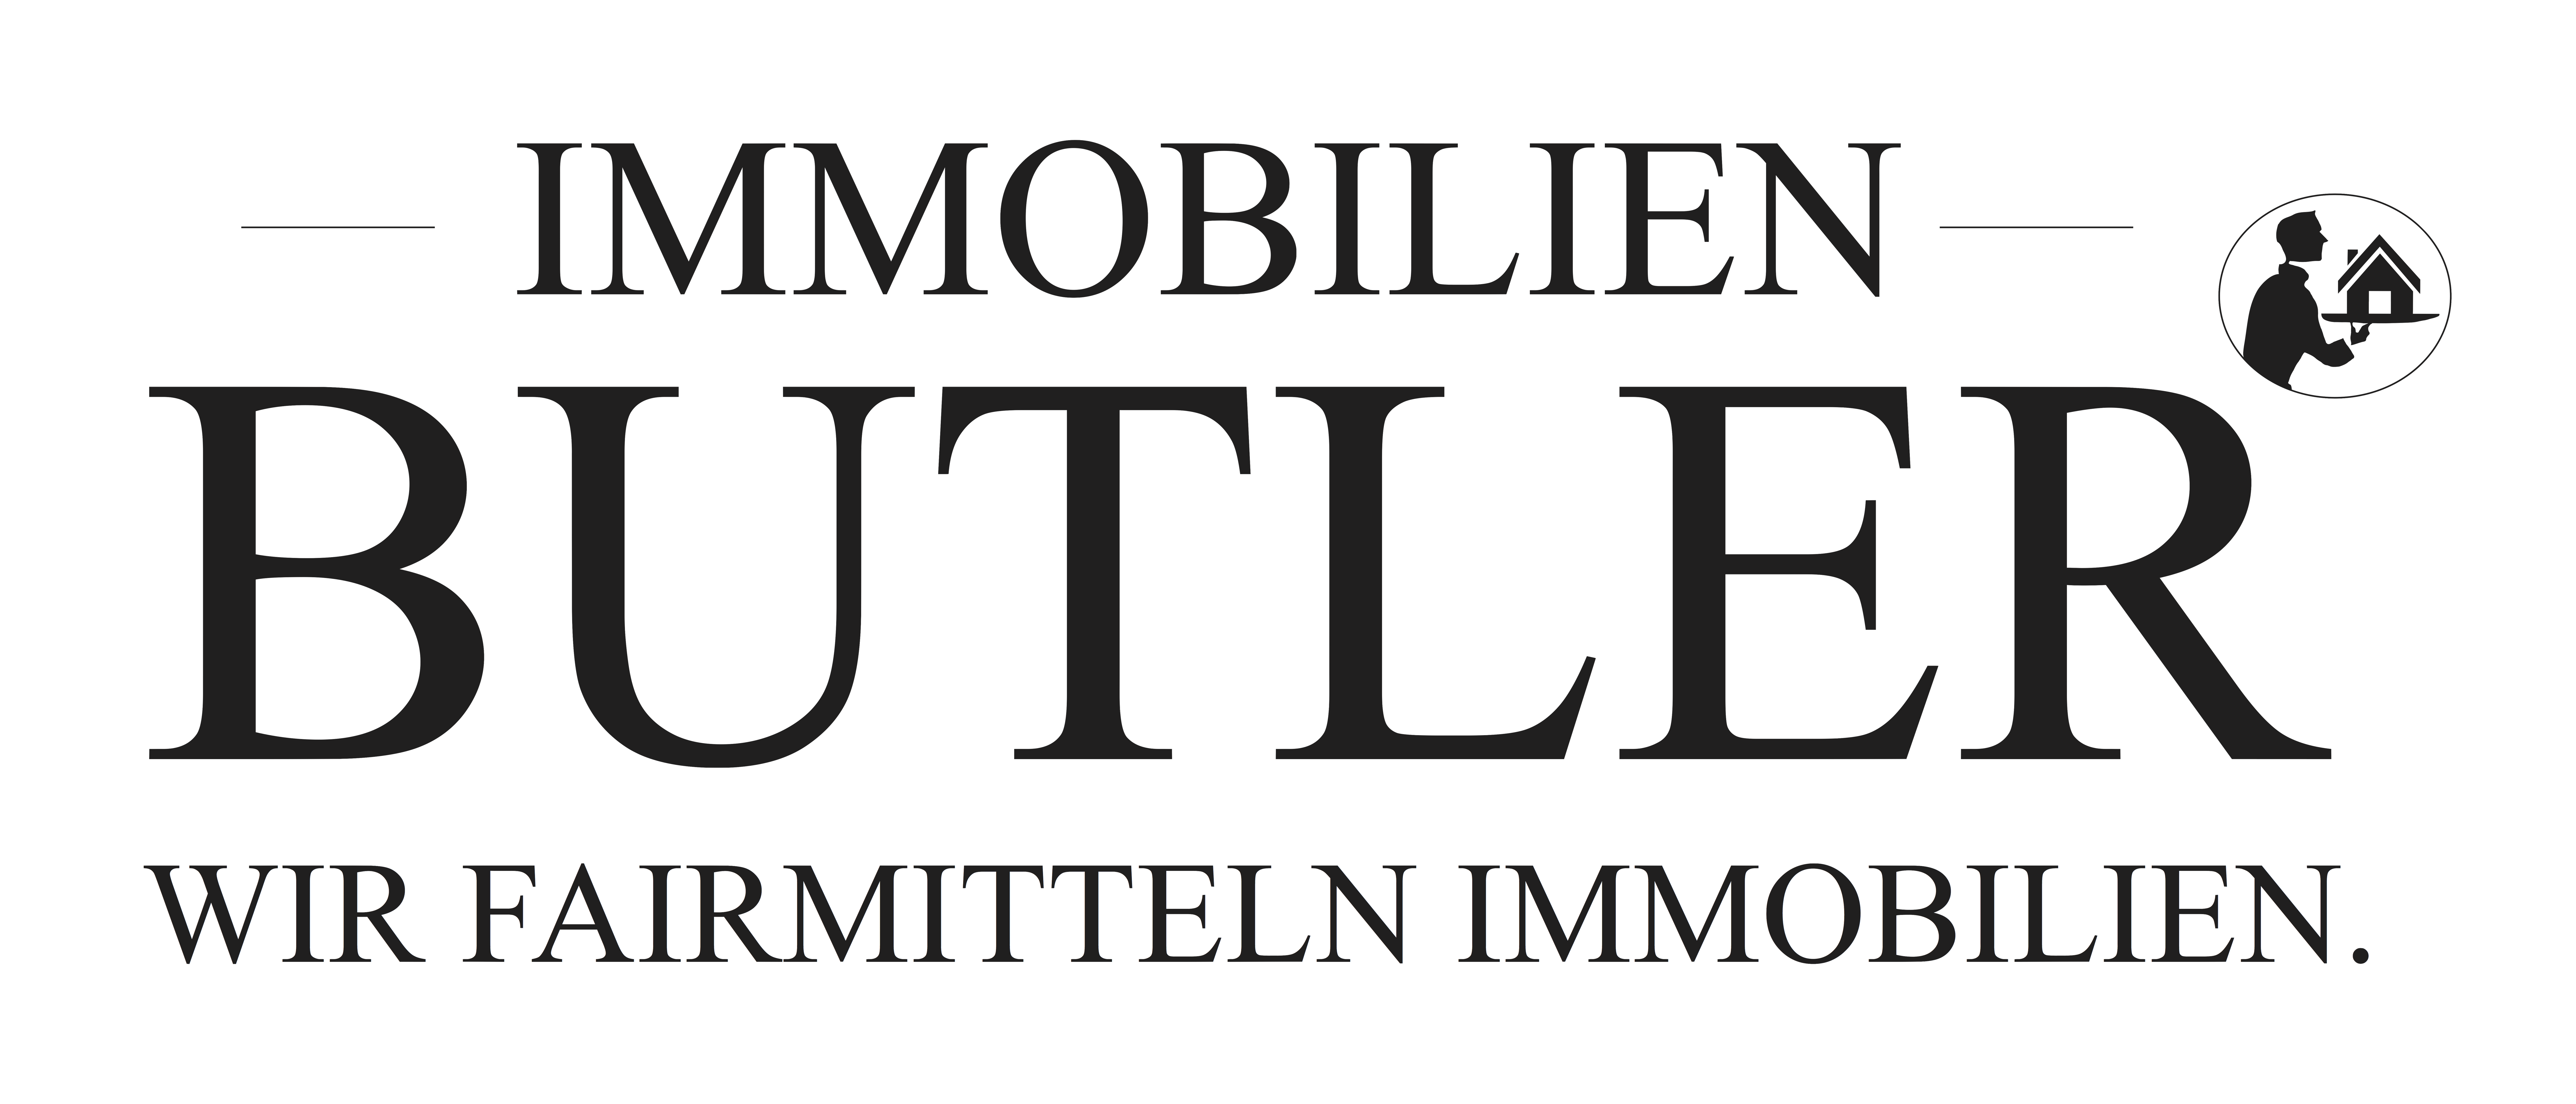 IMMOBUTLER Logo